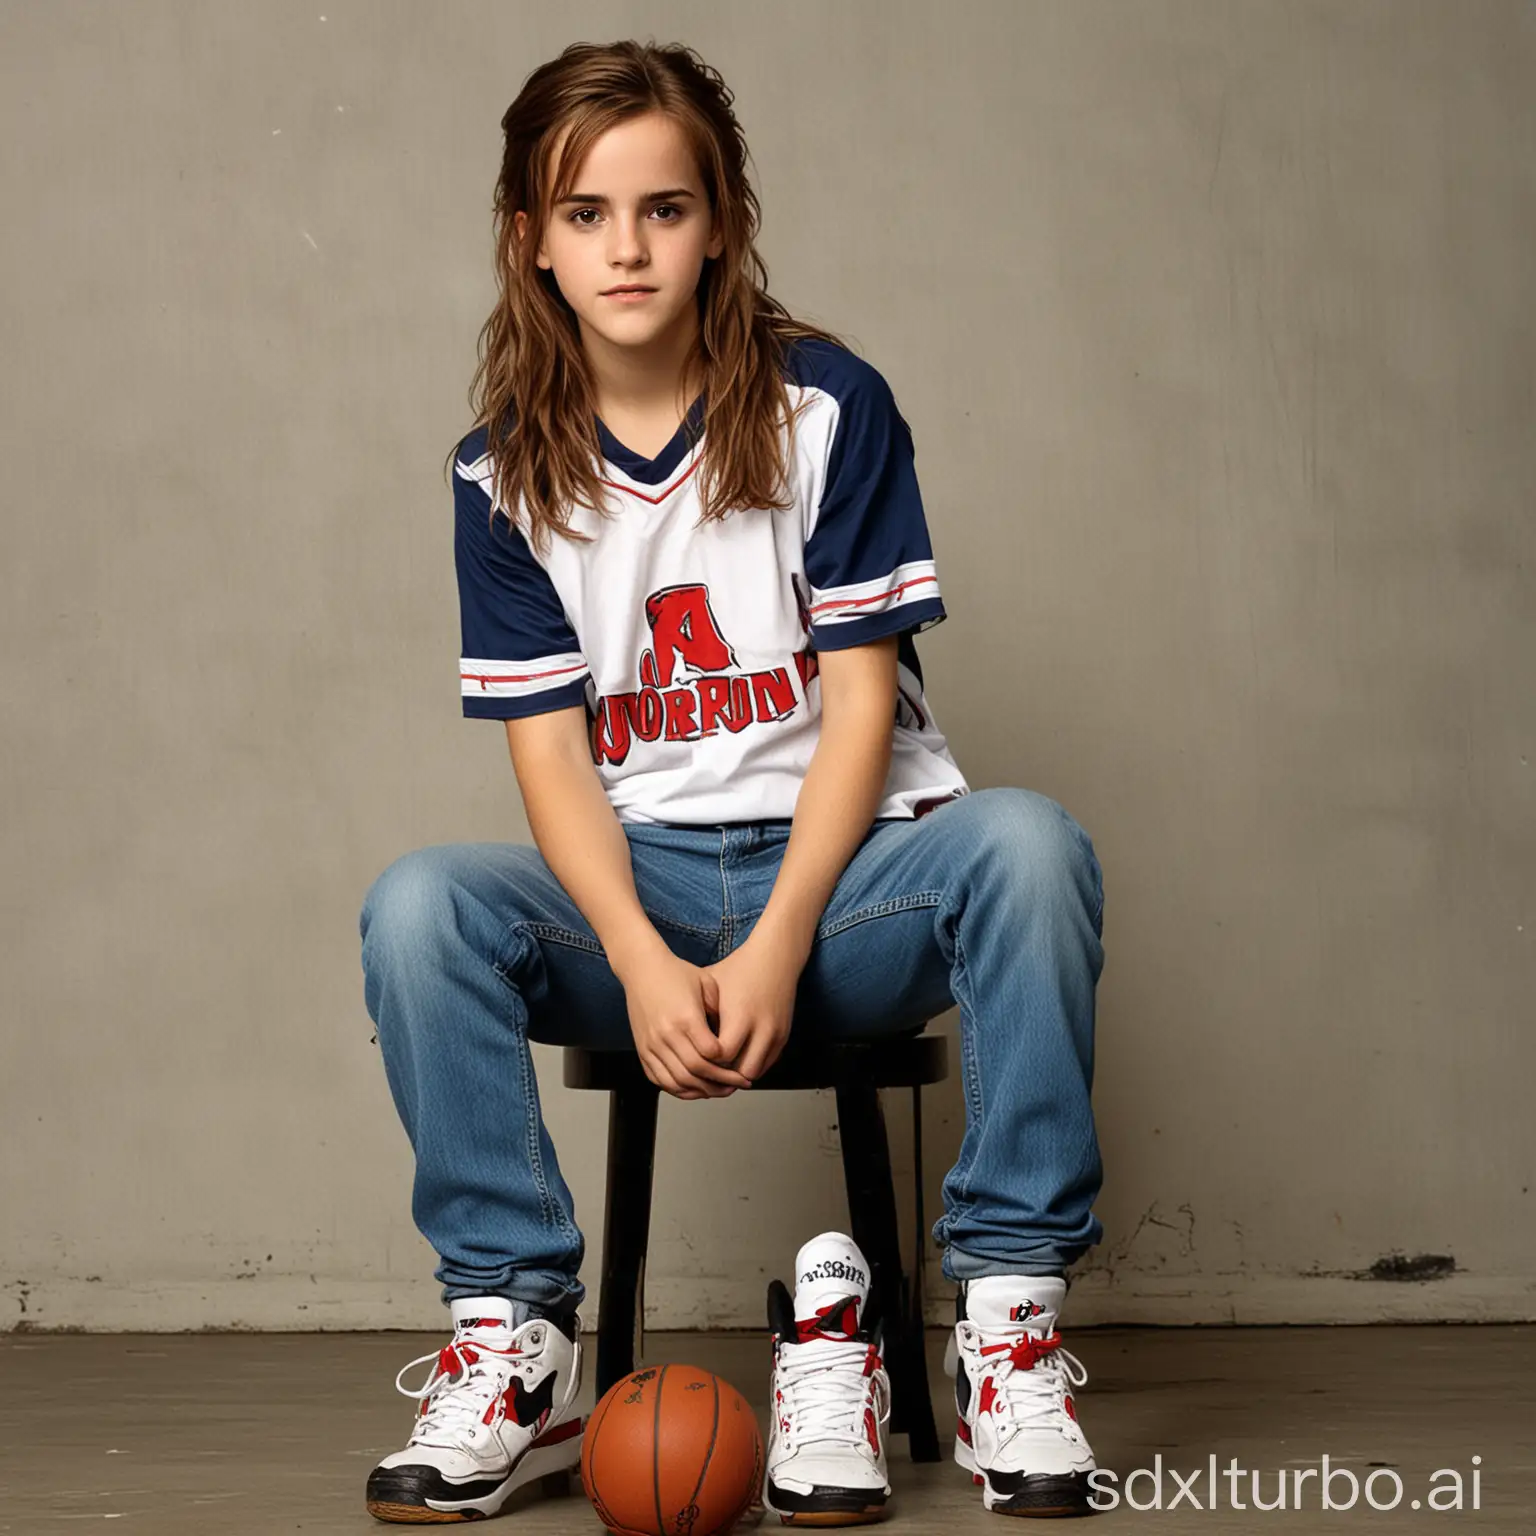 14 year old Emma Watson with long hair, wearing a basketball jersey, wearing baggy blue jeans, wearing Jordan sneakers, sweaty